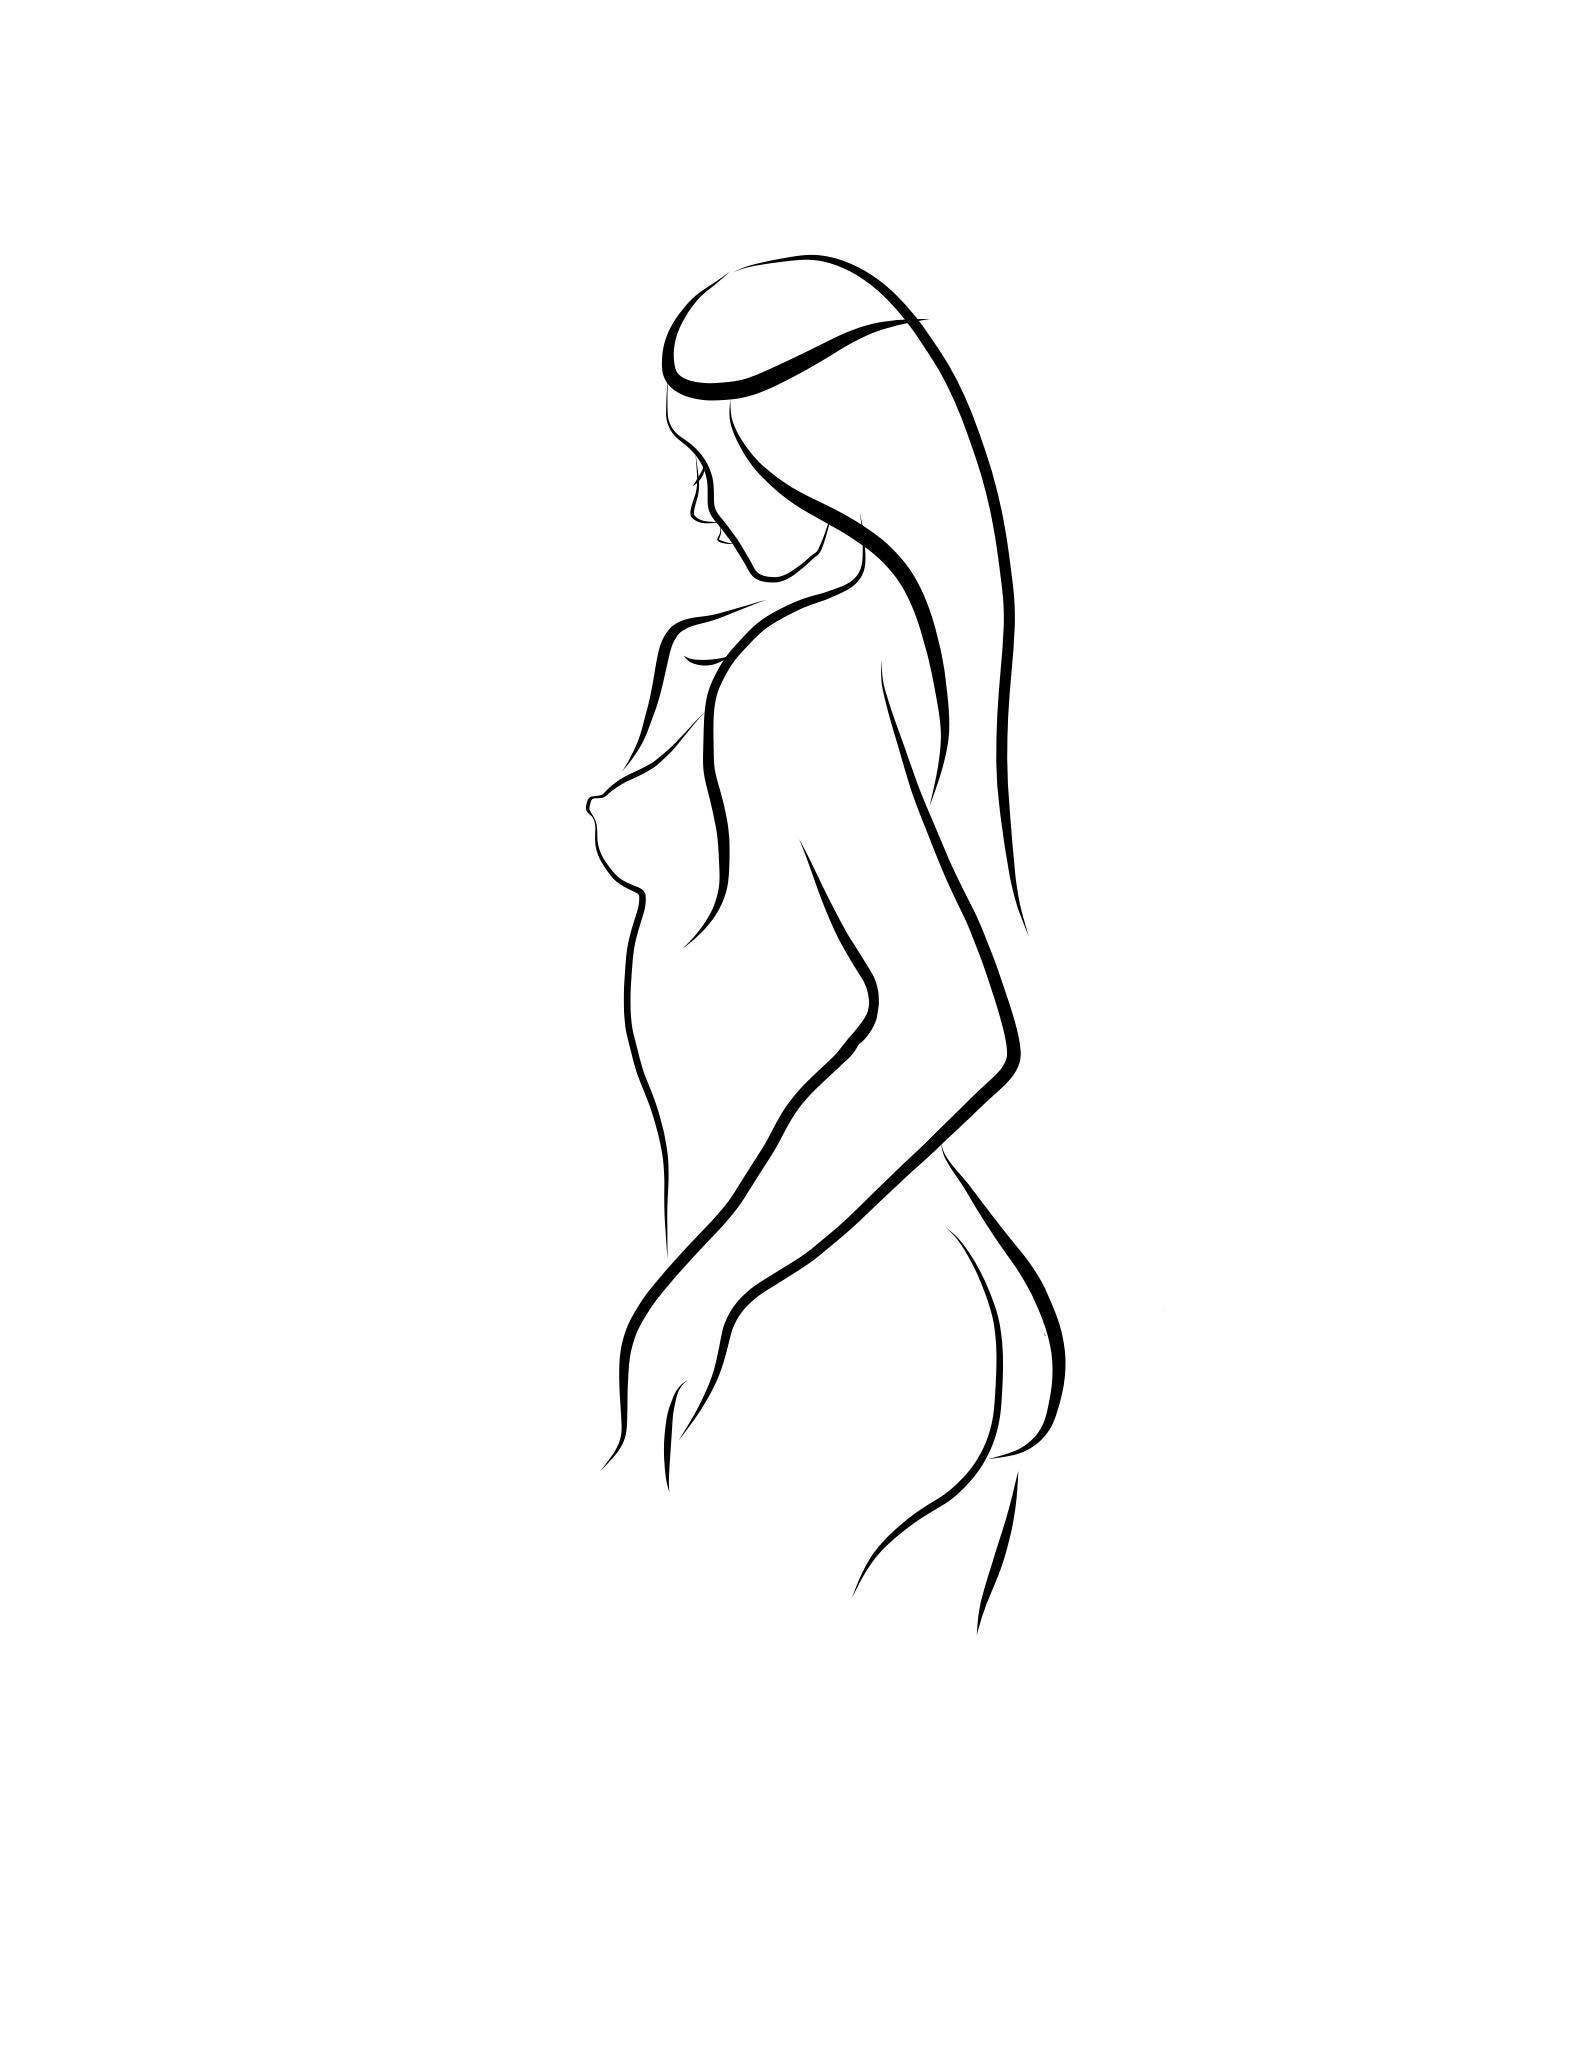 Michael Binkley Nude Print - Haiku #5, 1/50 - Digital Vector Drawing Standing Female Nude Woman Figure from R